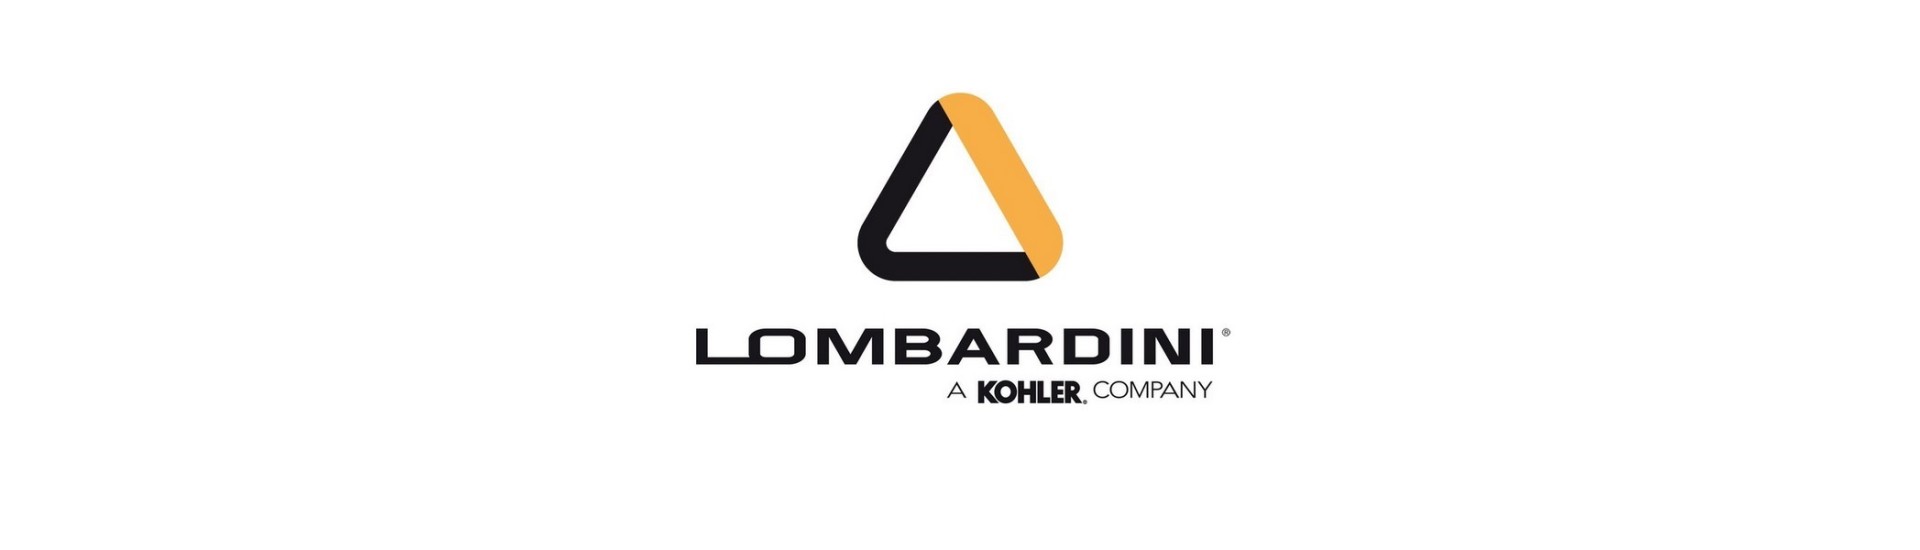 Laden Bobine zum besten Preis für Auto ohne Lizenz Lombardini